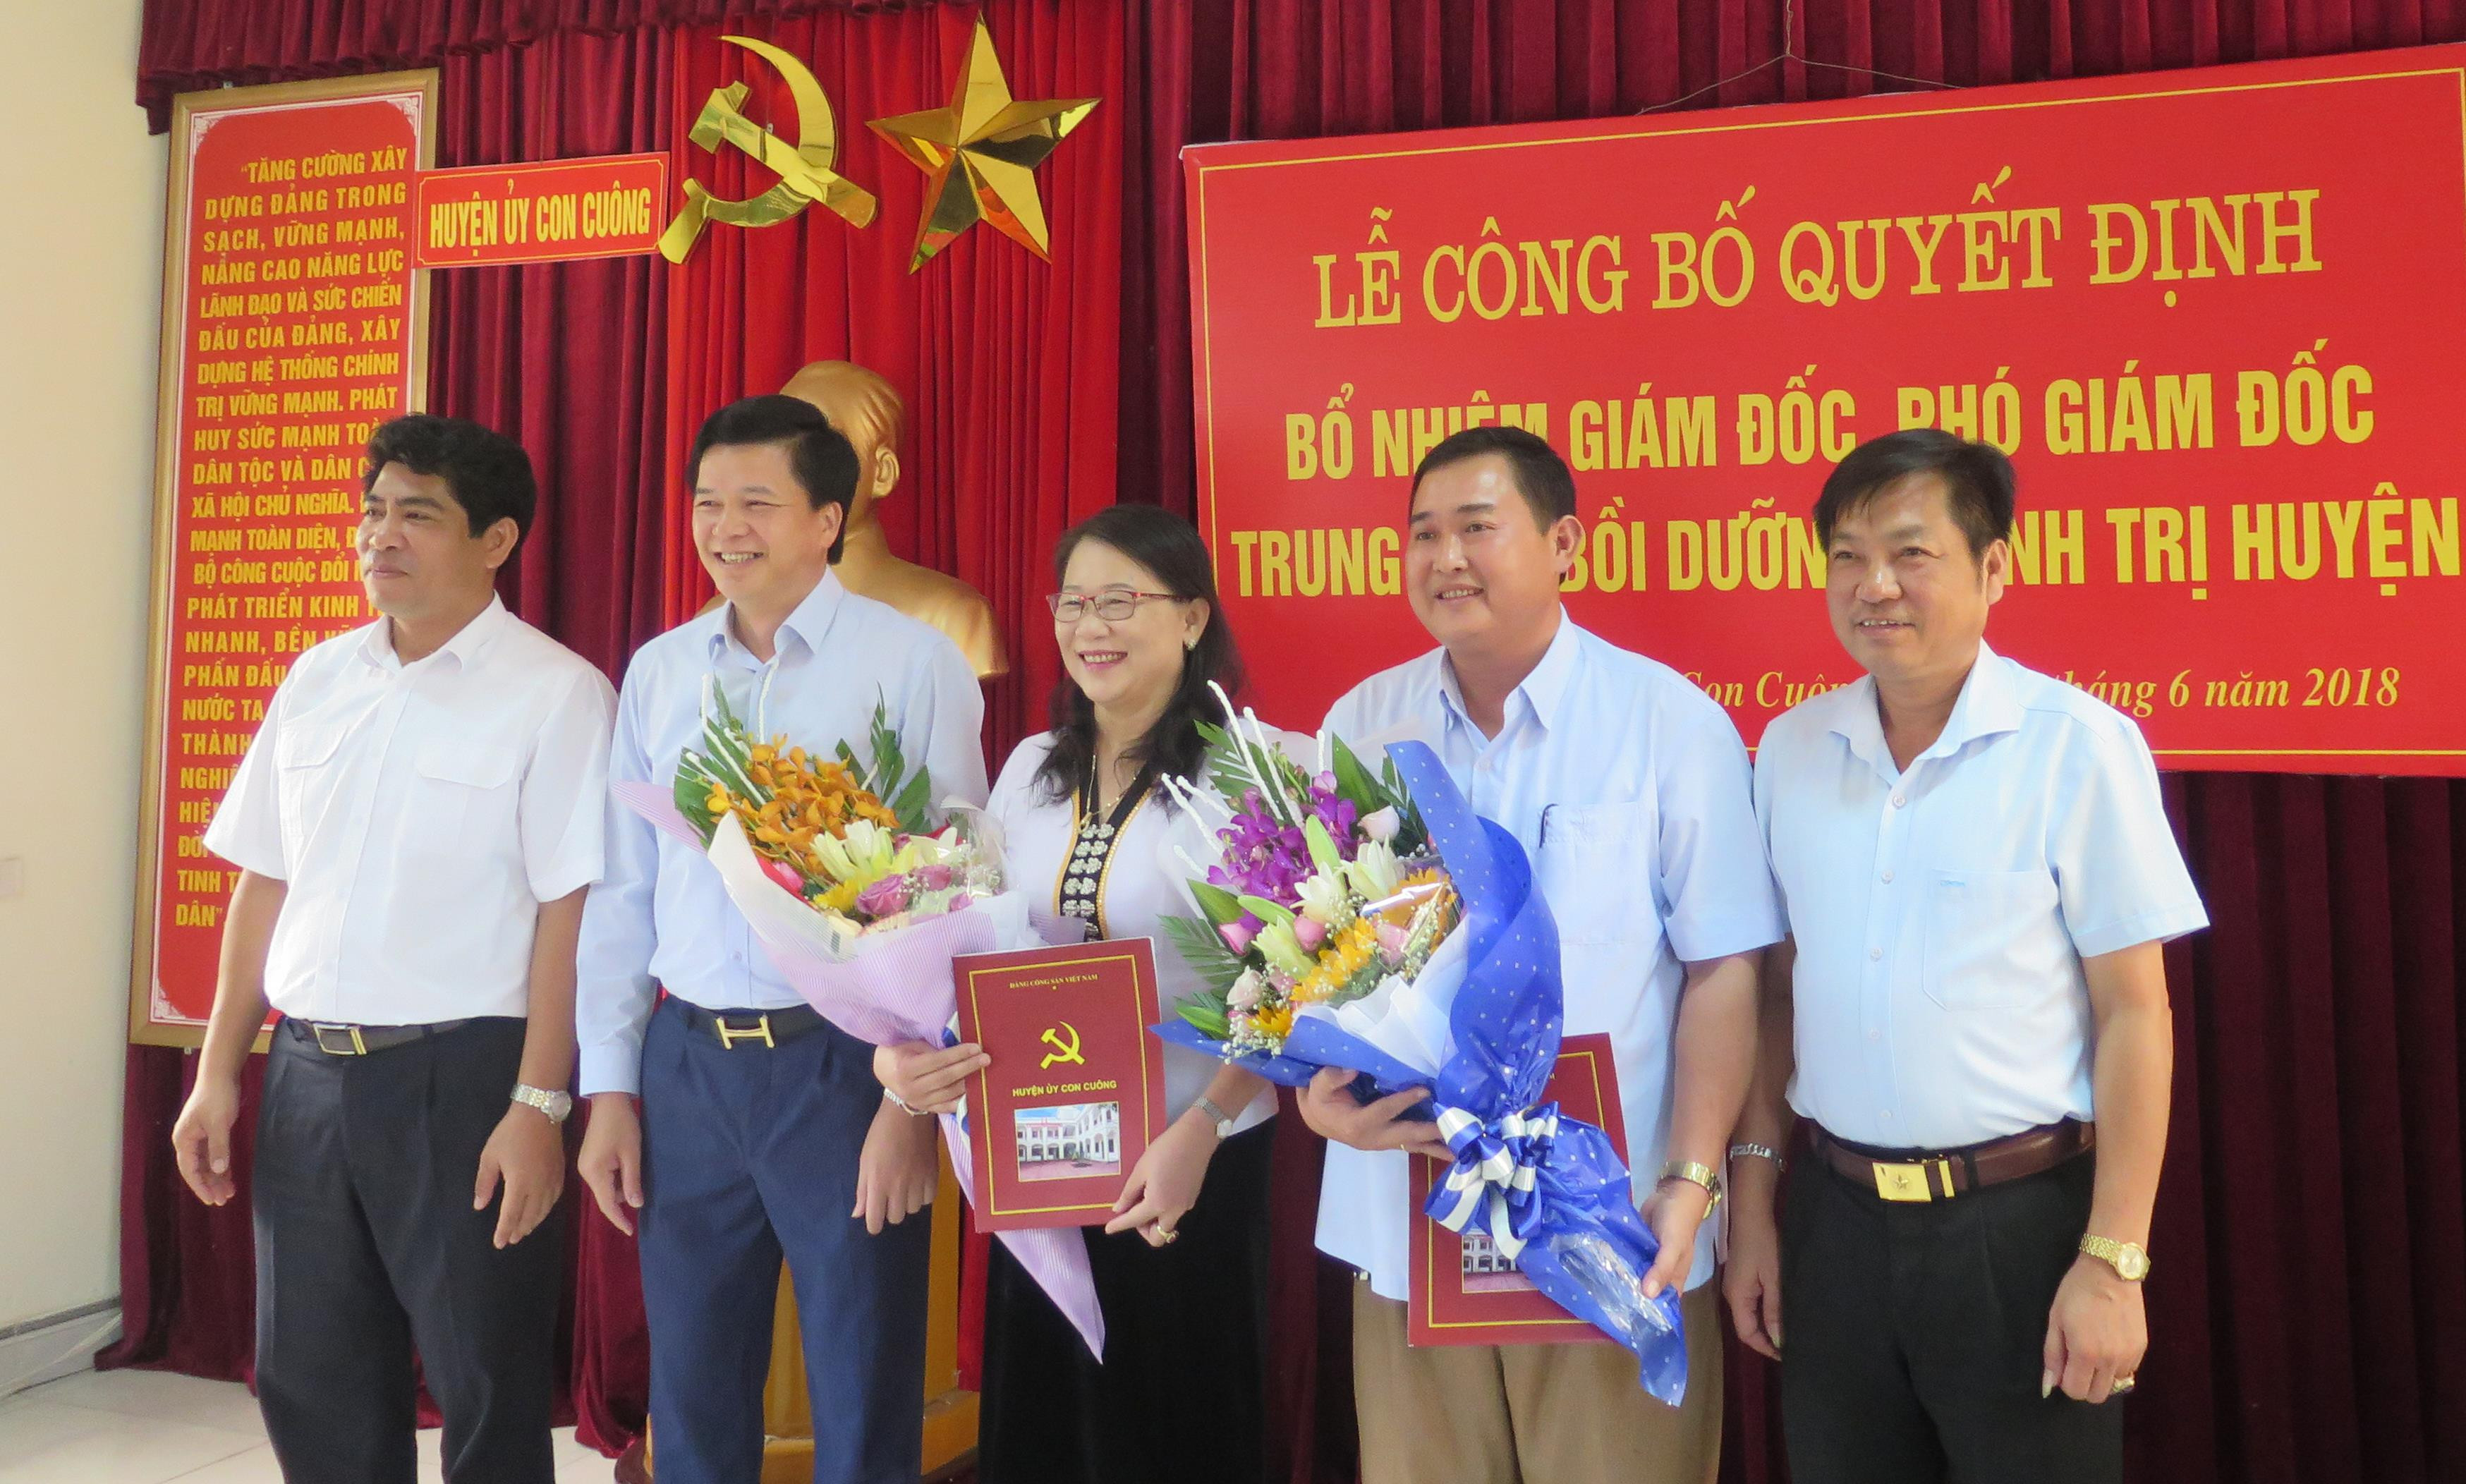 Trao quyết định phân công trưởng ban tuyên giáo đồng thời là giám đốc trung tâm bồi dưỡng chính trị tại huyện Con Cuông. Ảnh: T.G